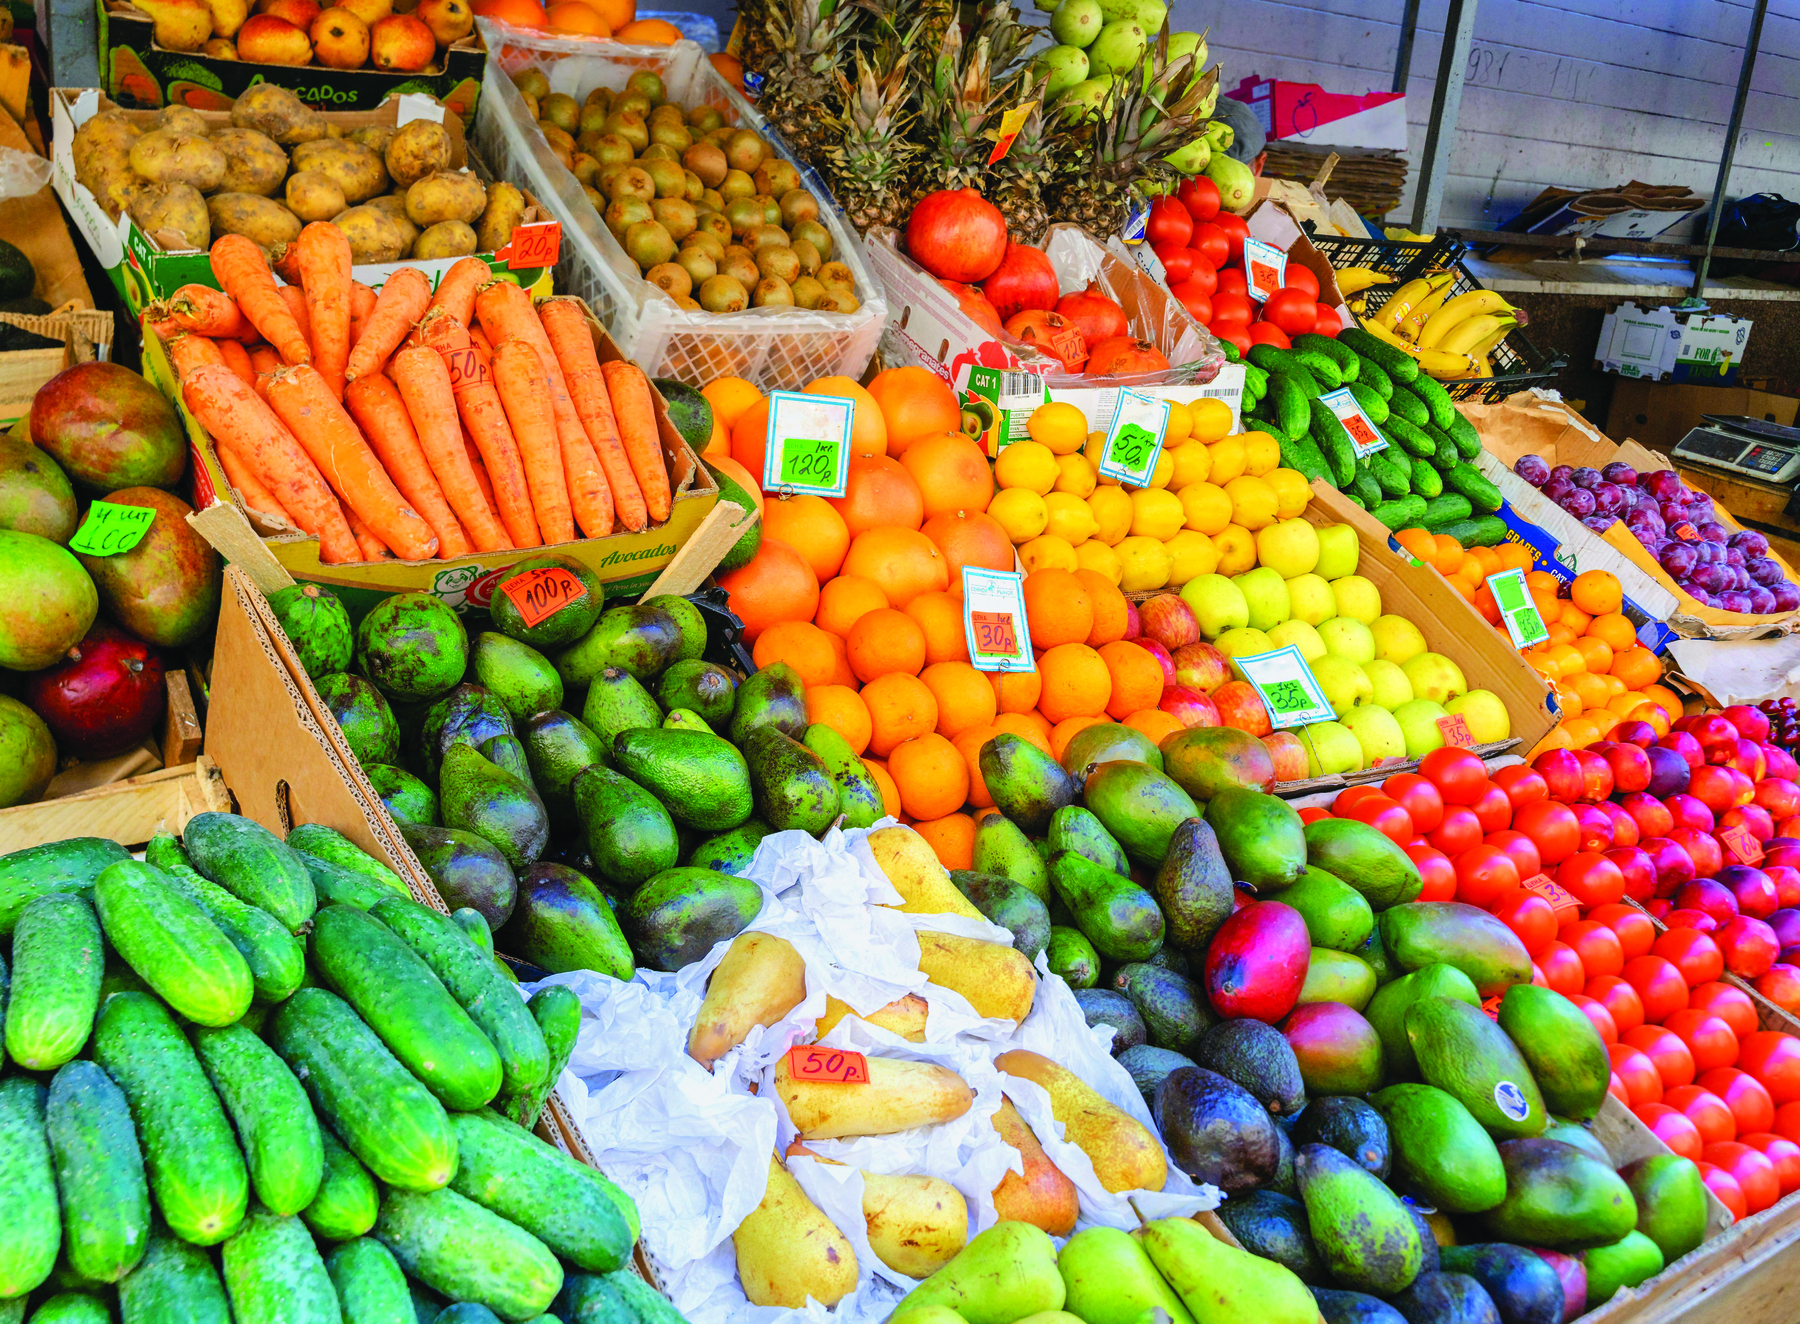 Fotografia. Frutas e legumes coloridos expostos em uma banca. Estão separados por tipo: mangas, pepinos, batatas, cenouras, abacates, peras, laranjas, abacaxis, tomates e bananas, entre outros.